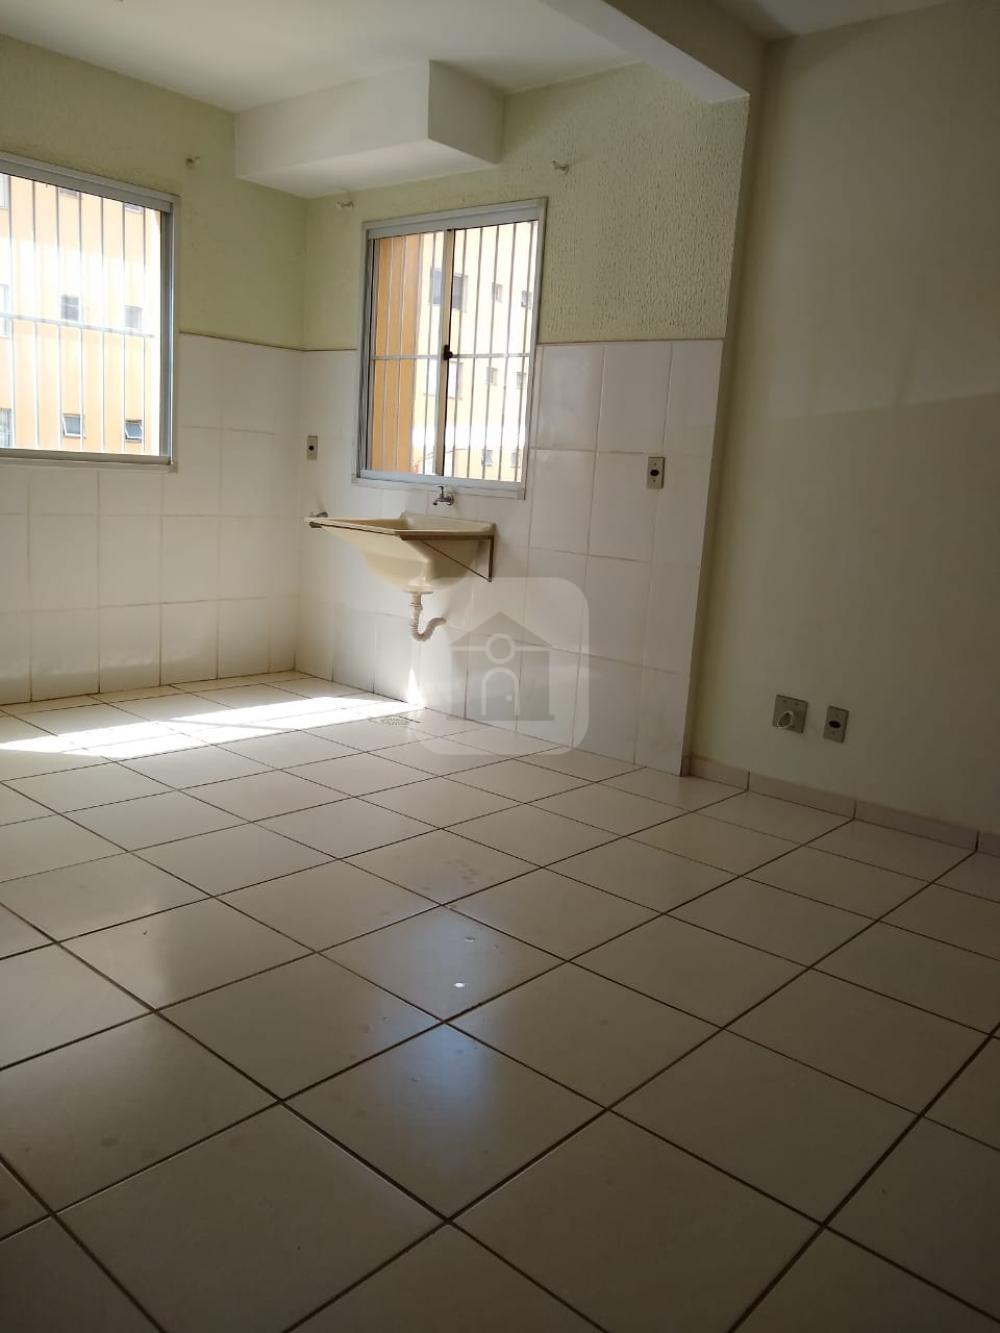 Comprar Apartamento / Loft em Uberlandia R$ 80.000,00 - Foto 8